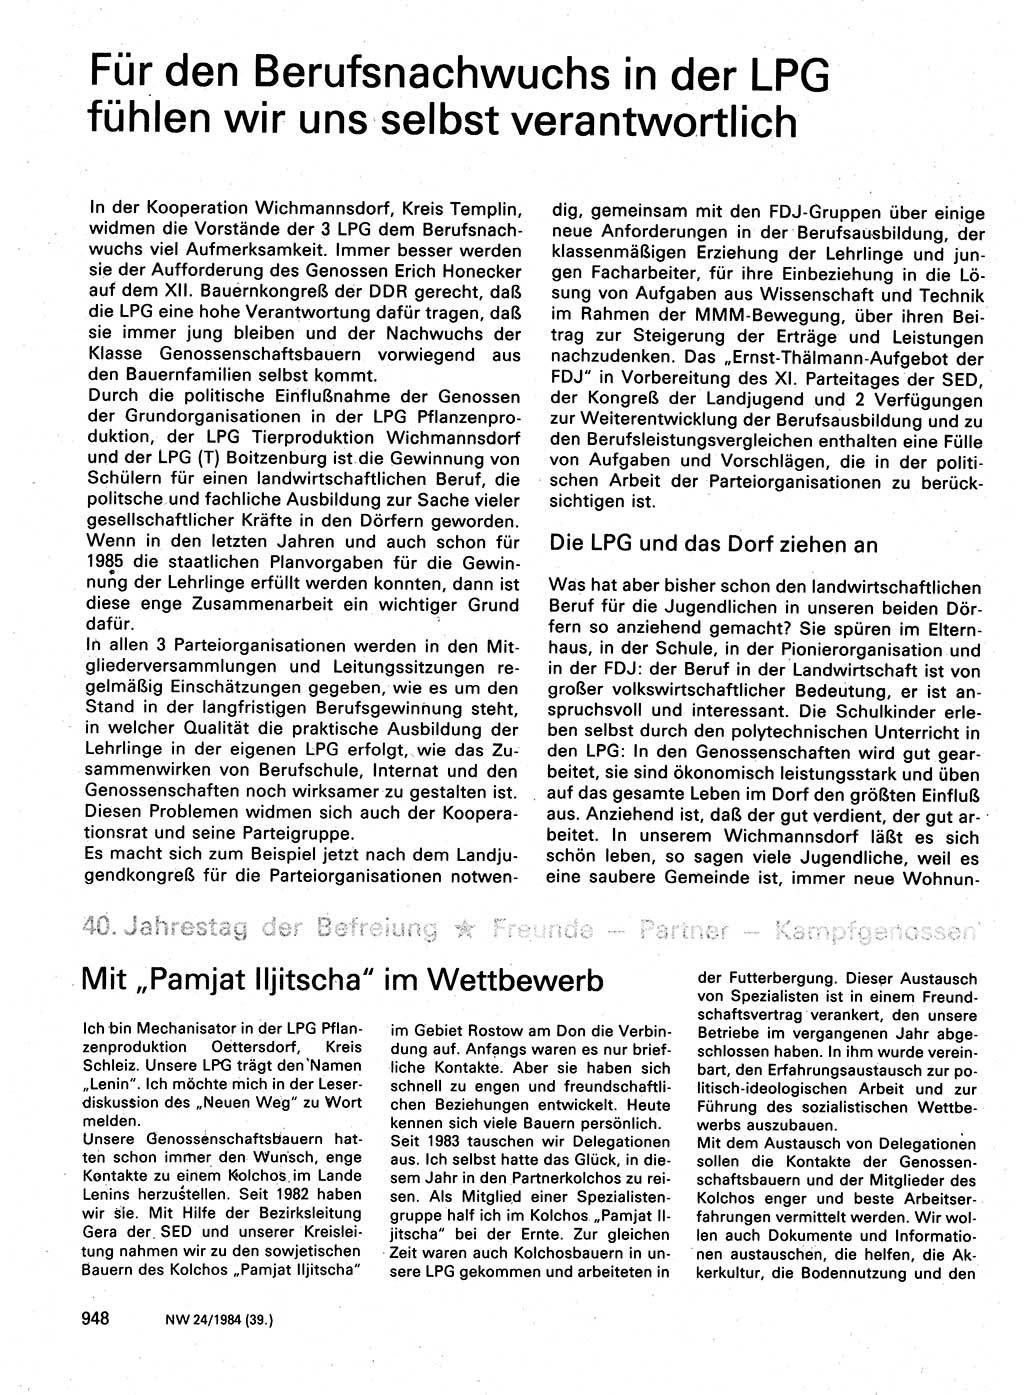 Neuer Weg (NW), Organ des Zentralkomitees (ZK) der SED (Sozialistische Einheitspartei Deutschlands) für Fragen des Parteilebens, 39. Jahrgang [Deutsche Demokratische Republik (DDR)] 1984, Seite 948 (NW ZK SED DDR 1984, S. 948)